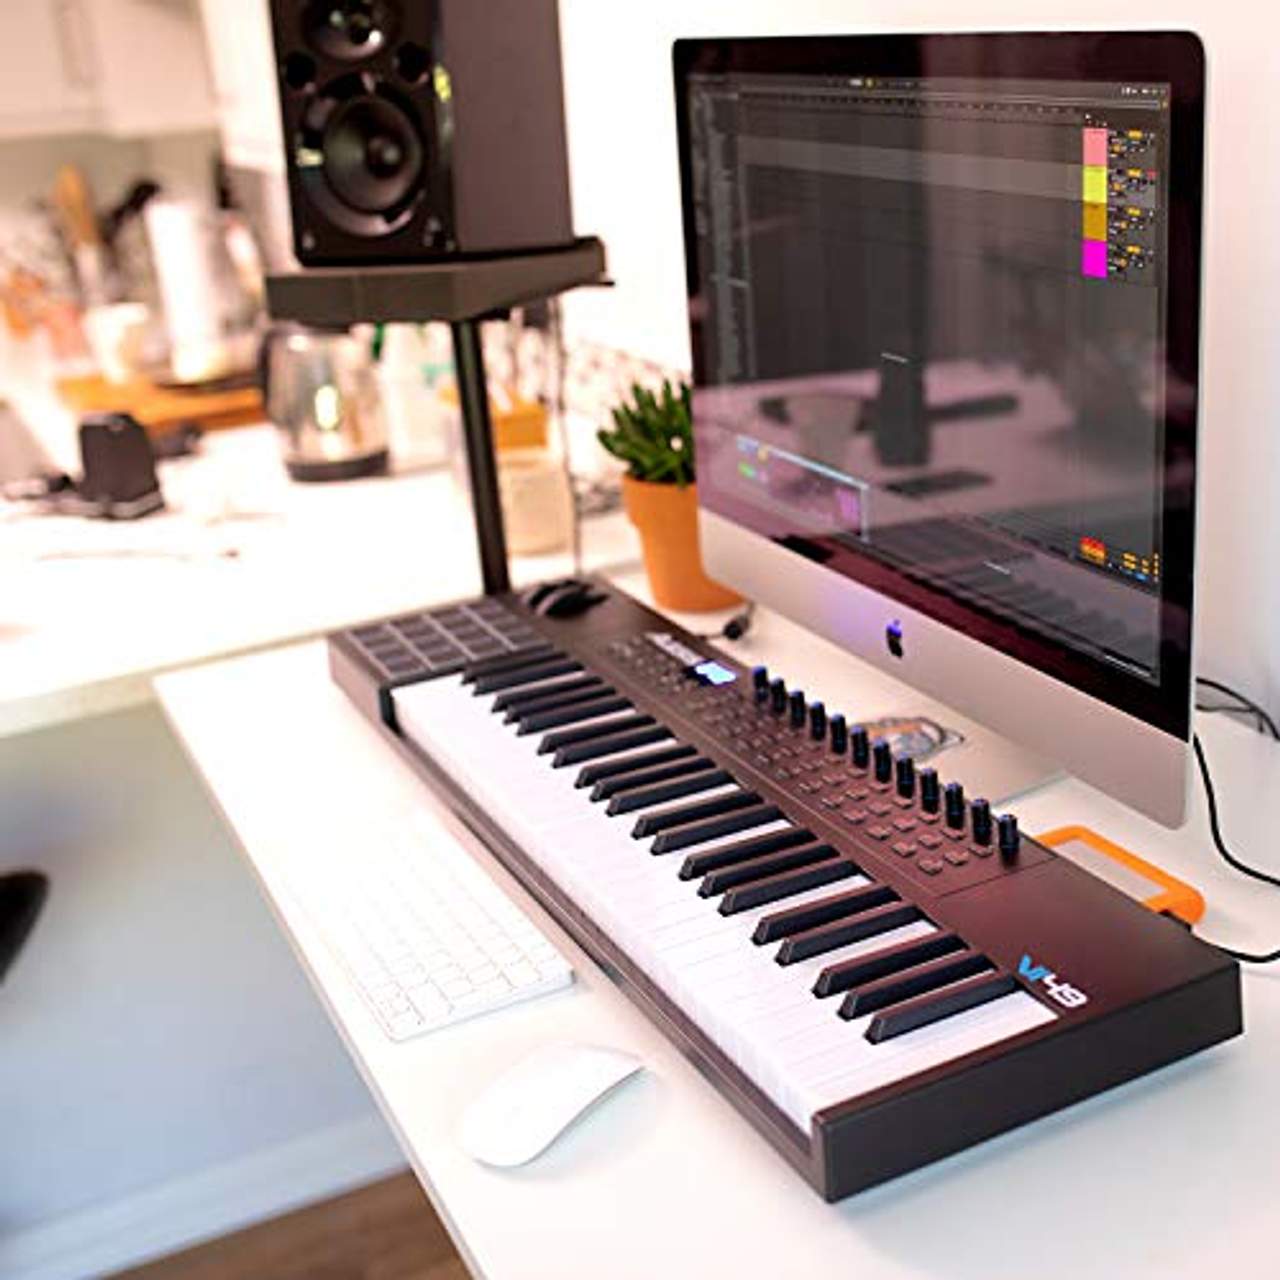 Alesis VI49 49 -Tasten-USB-MIDI-Keyboard mit 16 Pads